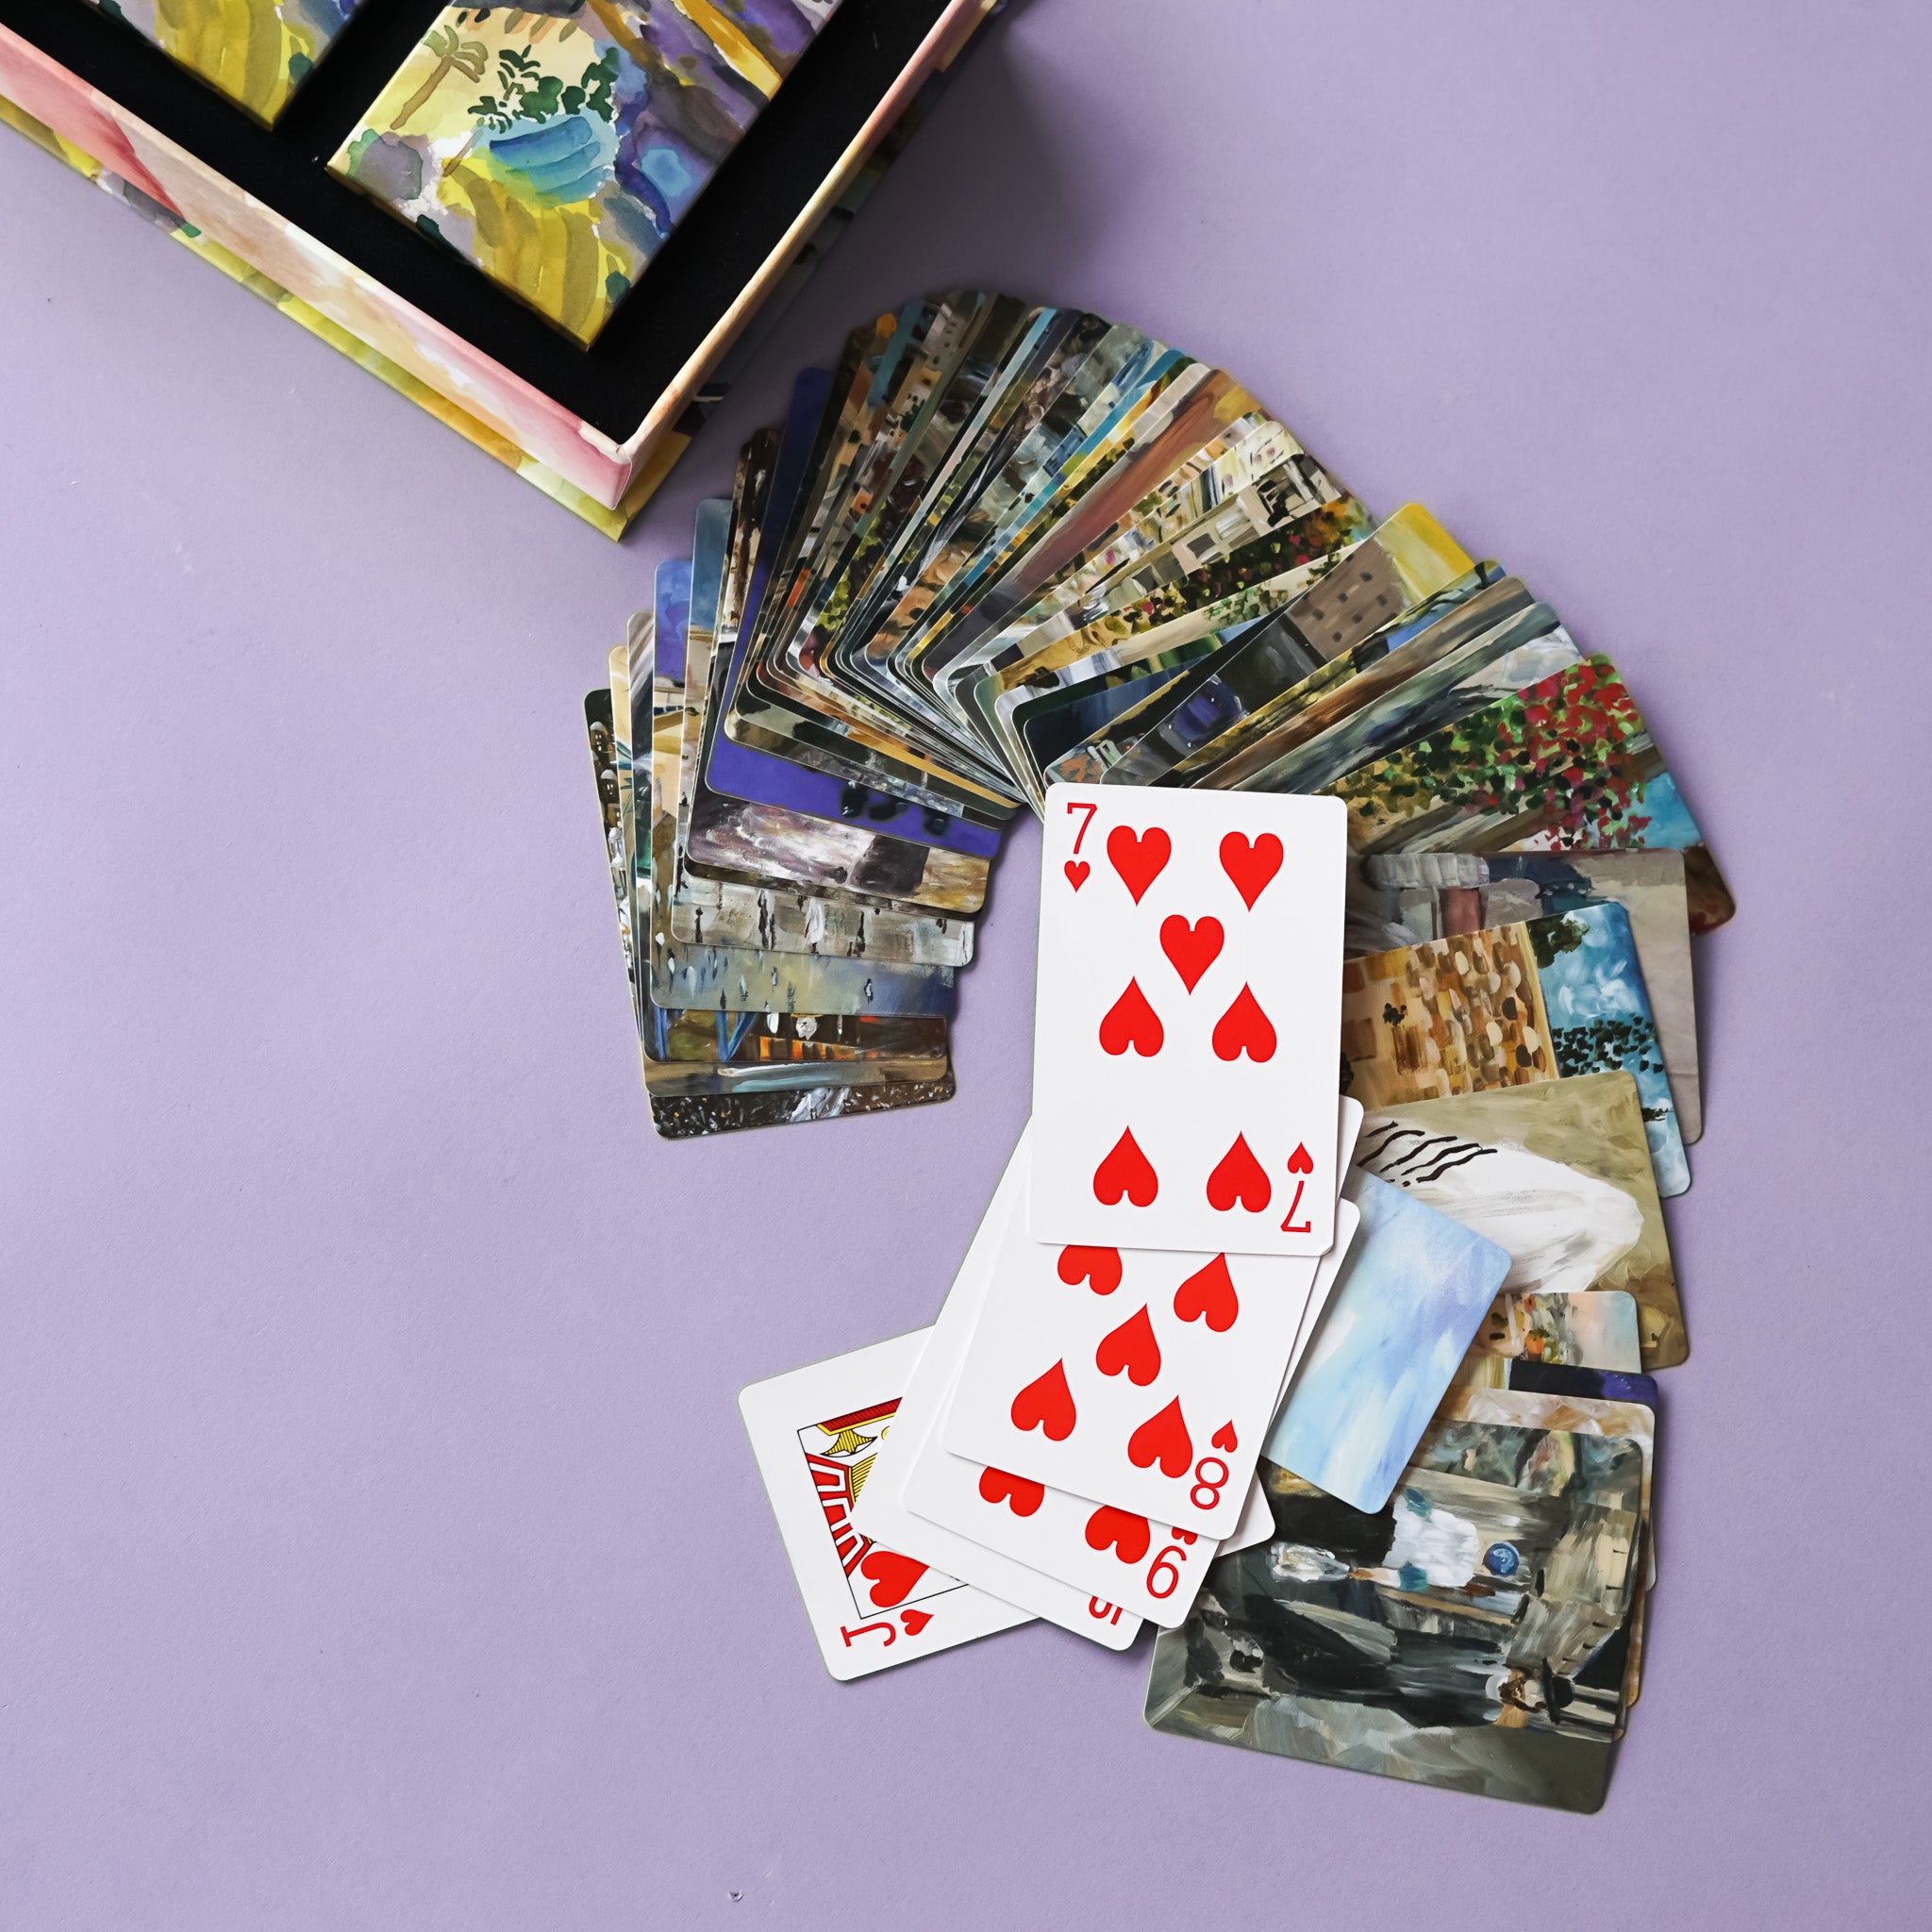 Playing Card Set